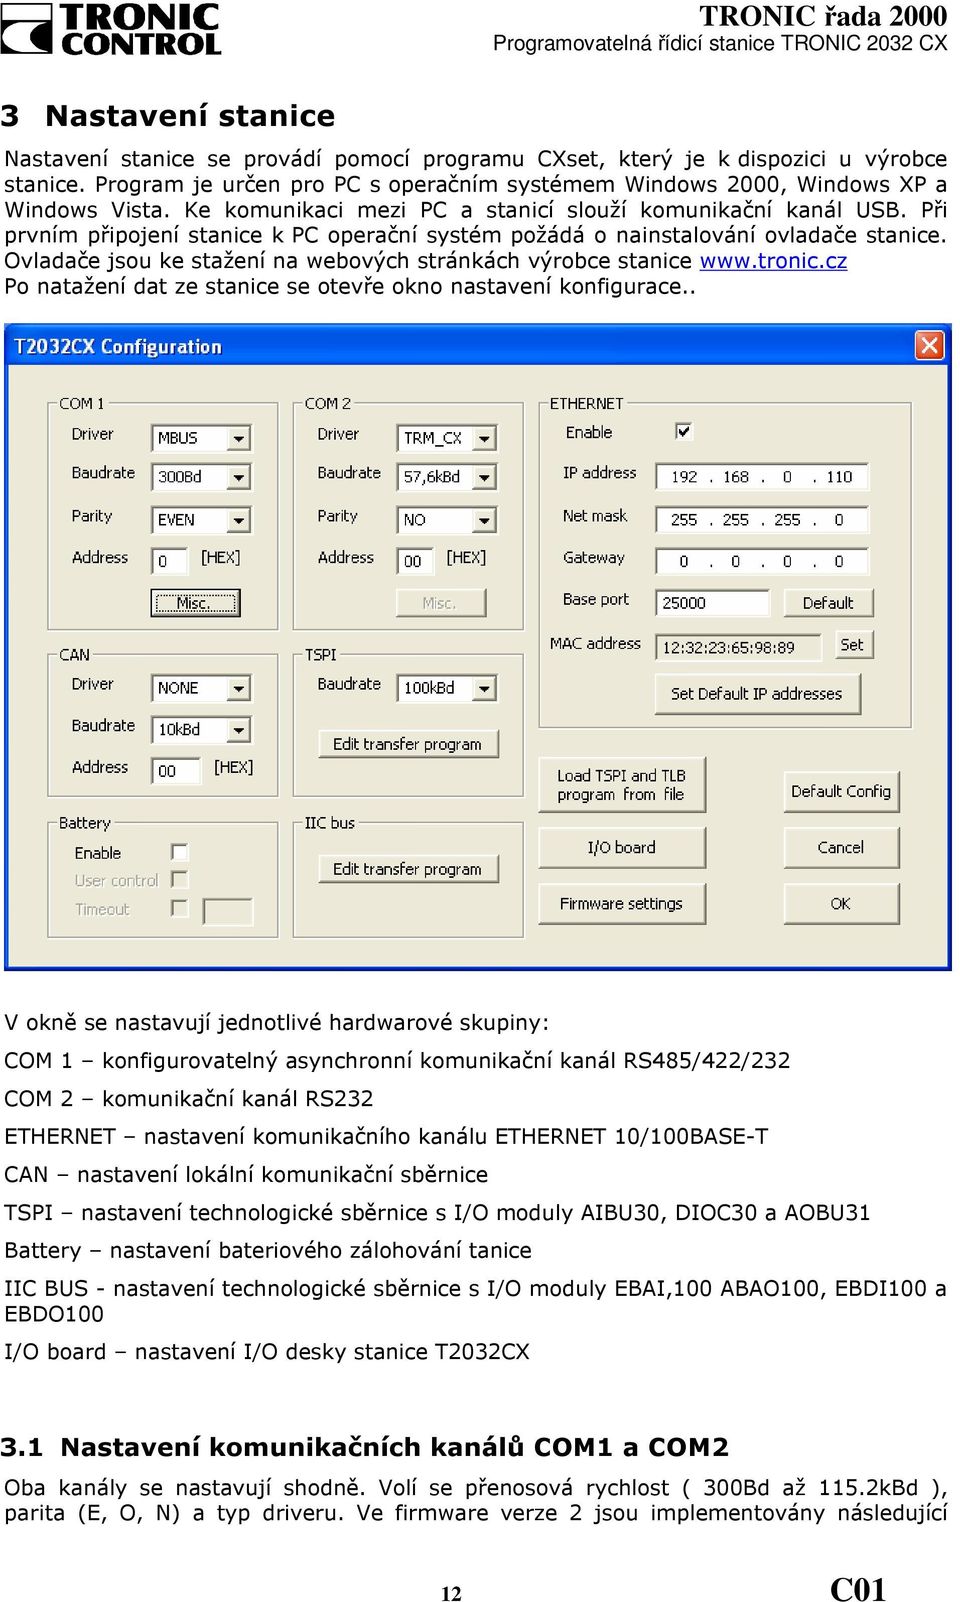 Při prvním připojení stanice k PC operační systém požádá o nainstalování ovladače stanice. Ovladače jsou ke stažení na webových stránkách výrobce stanice www.tronic.